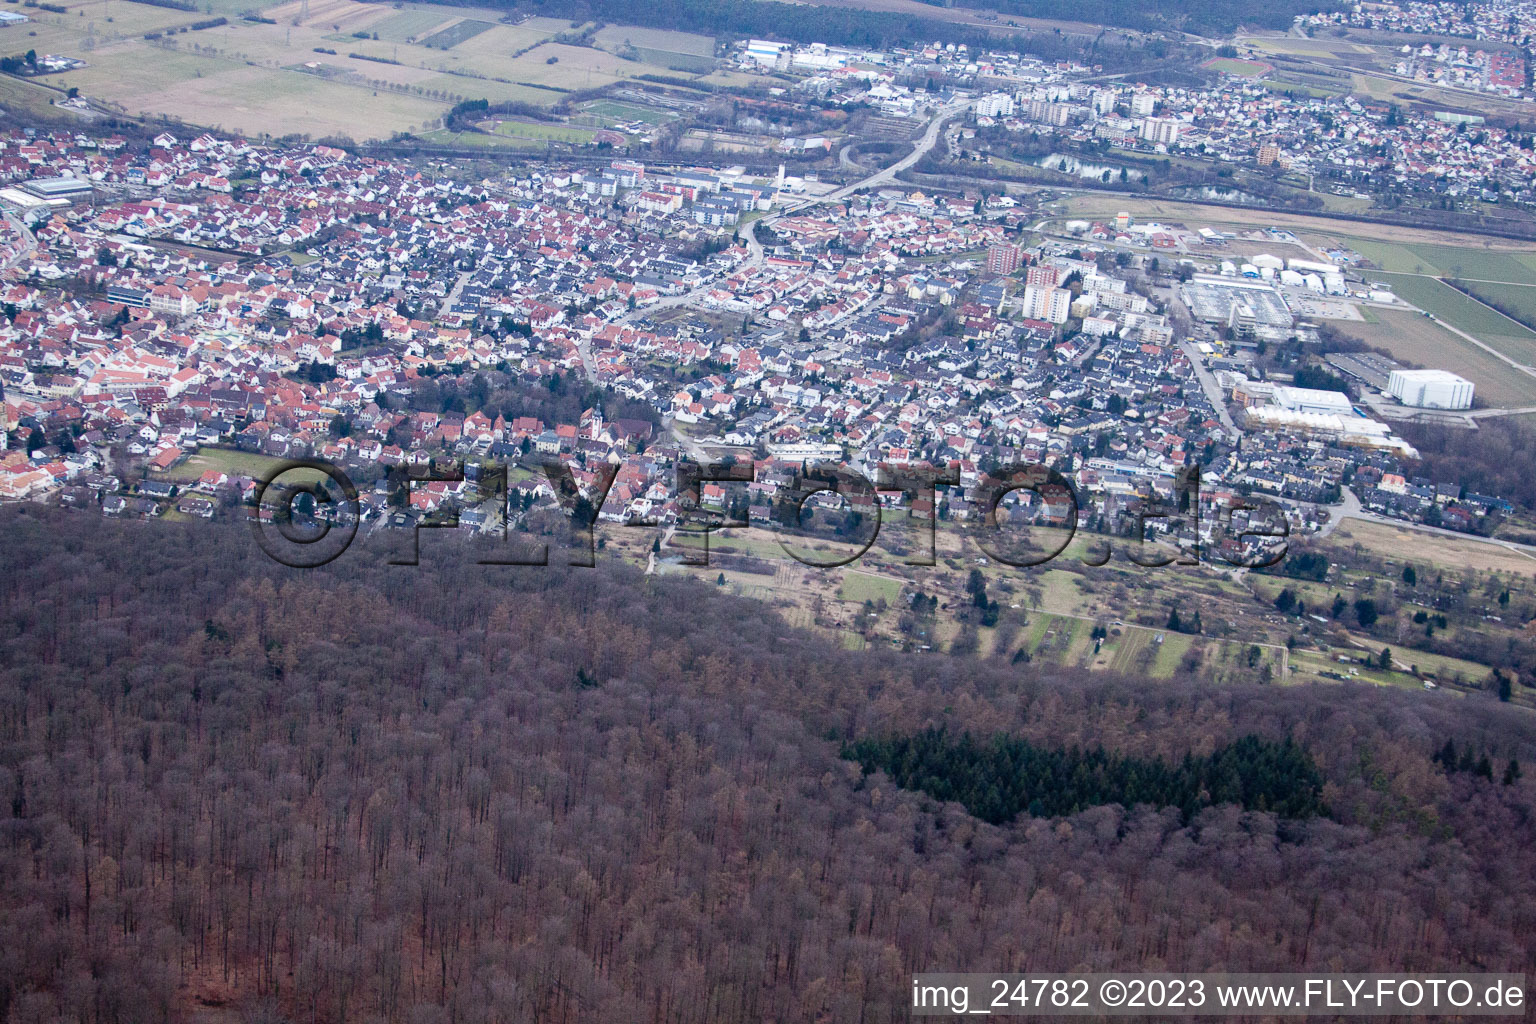 Carrière de calcaire à Nußloch dans le département Bade-Wurtemberg, Allemagne vue d'en haut